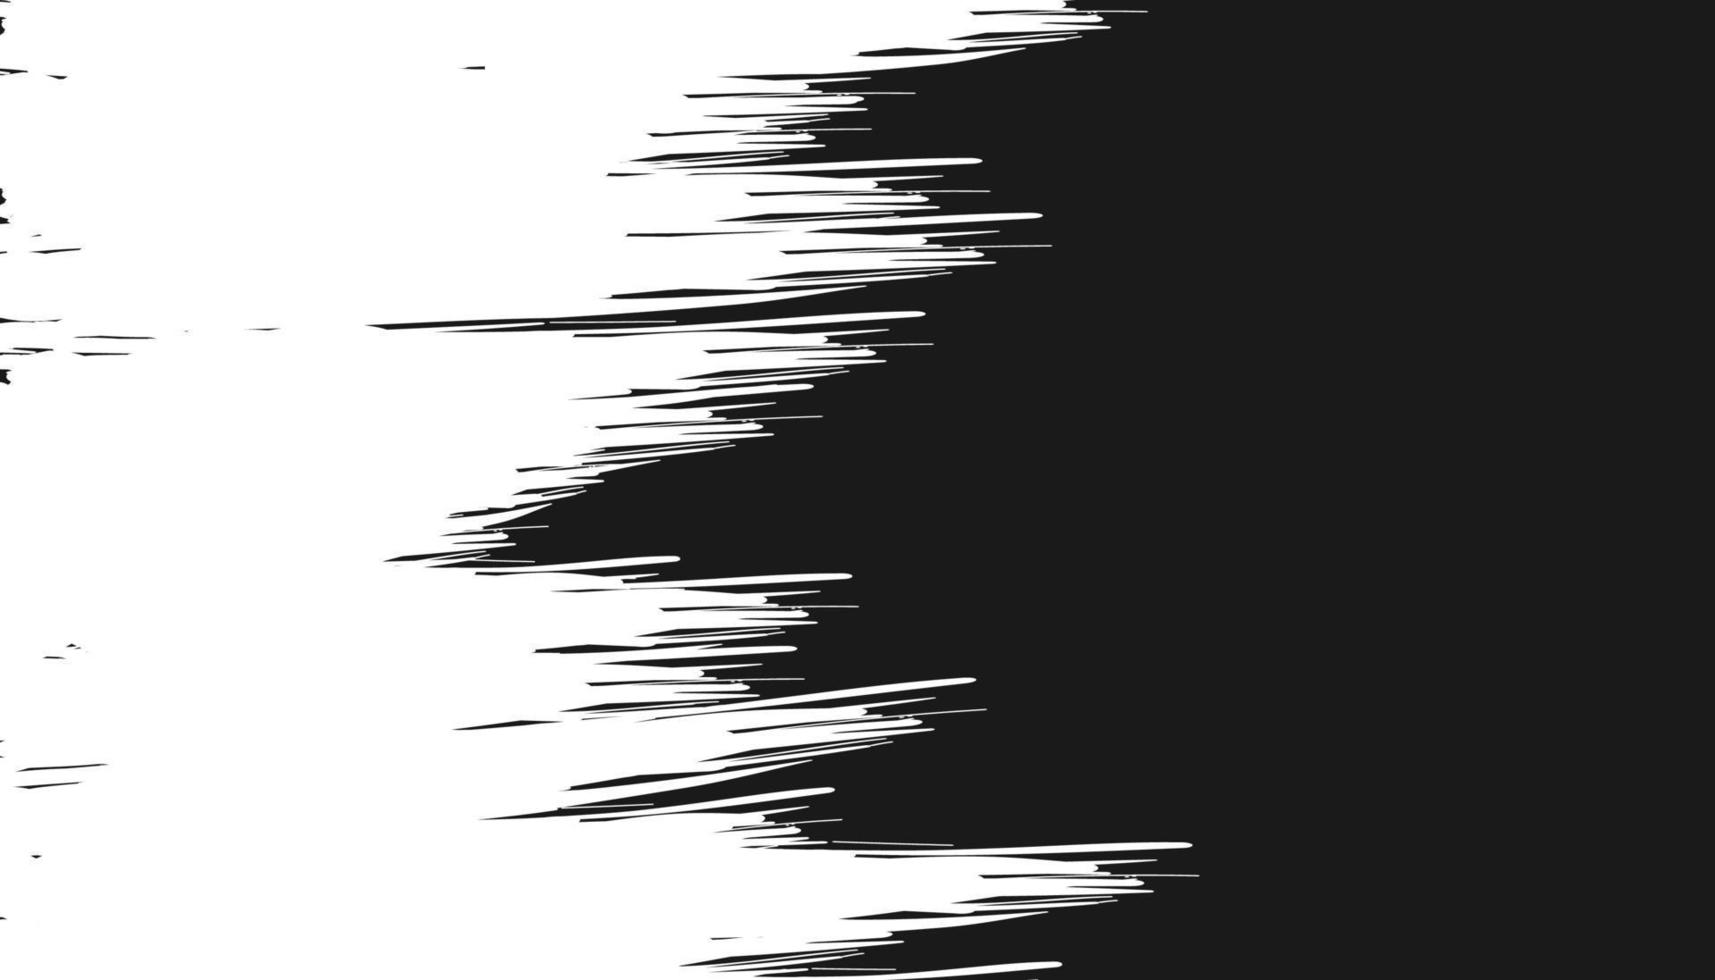 Abstract splash brush grunge texture with dark grey background vector